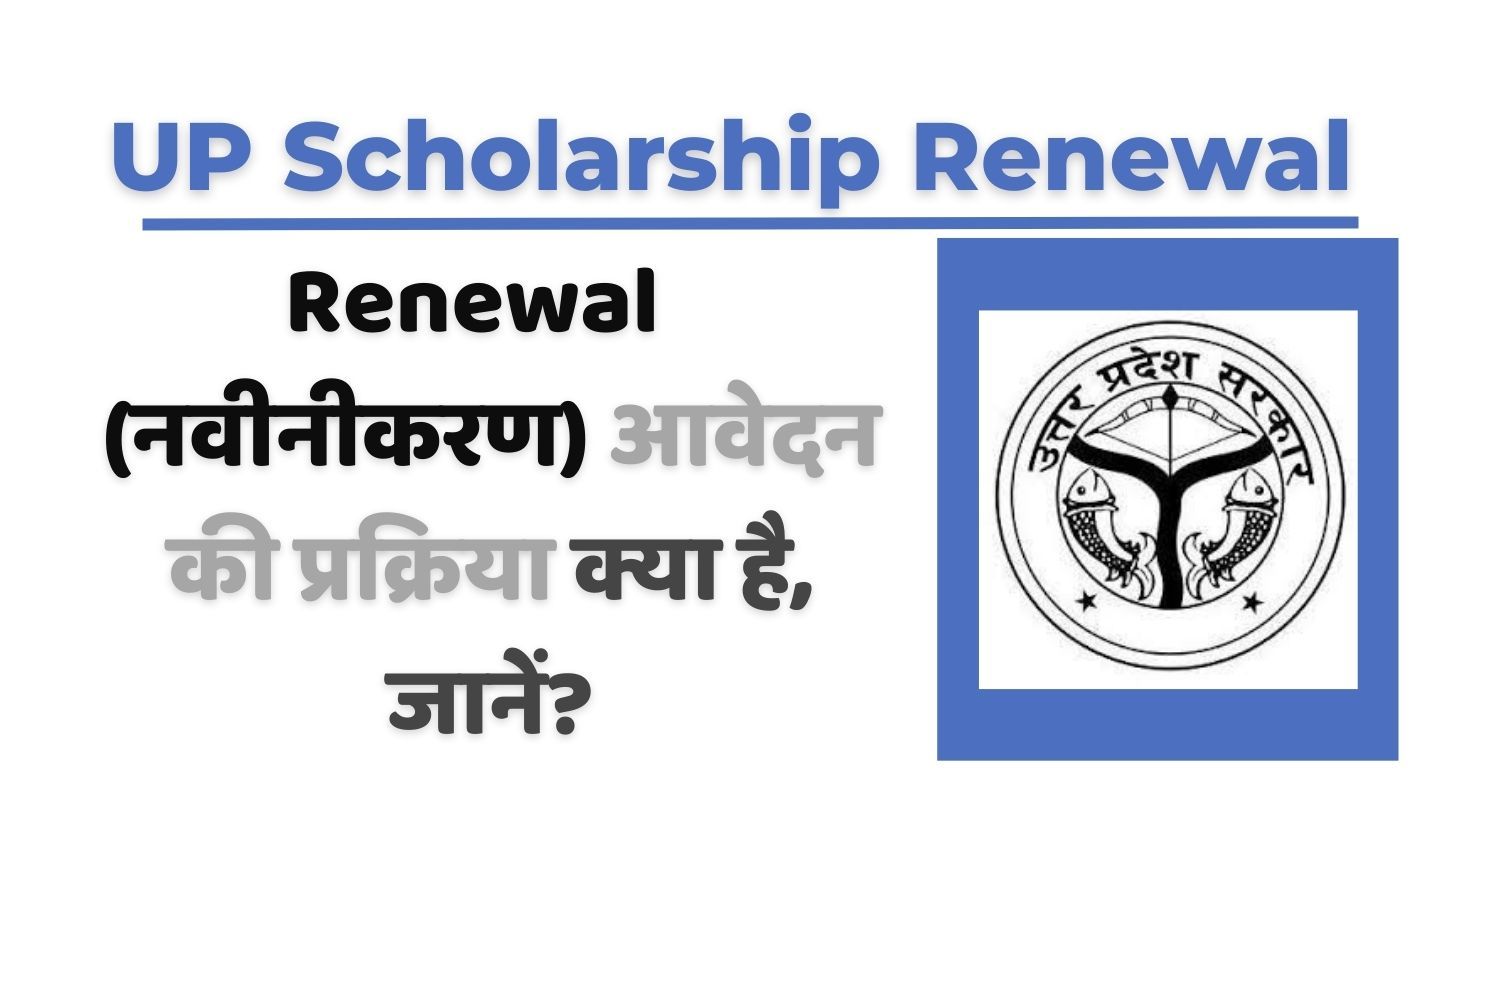 UP Scholarship Renewal कैसे करें? जानें पूरी प्रक्रिया